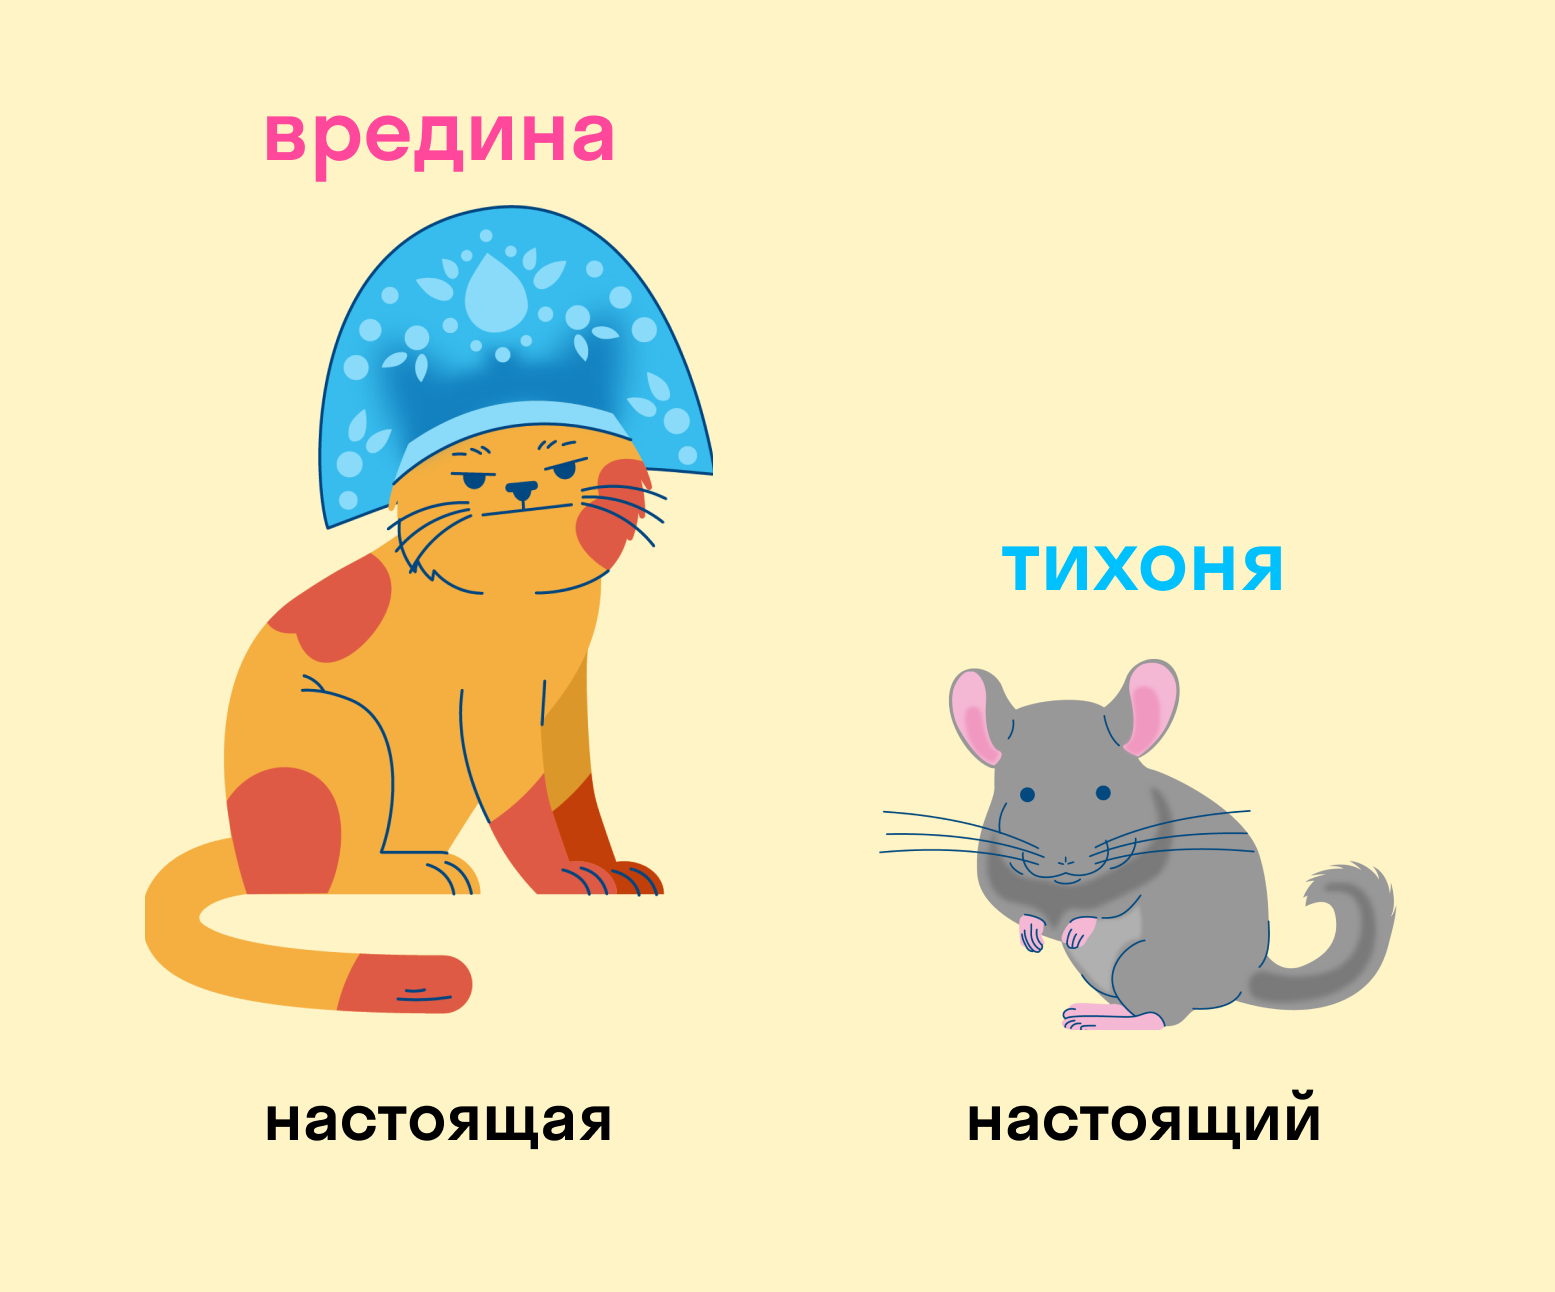 Род леди в русском языке